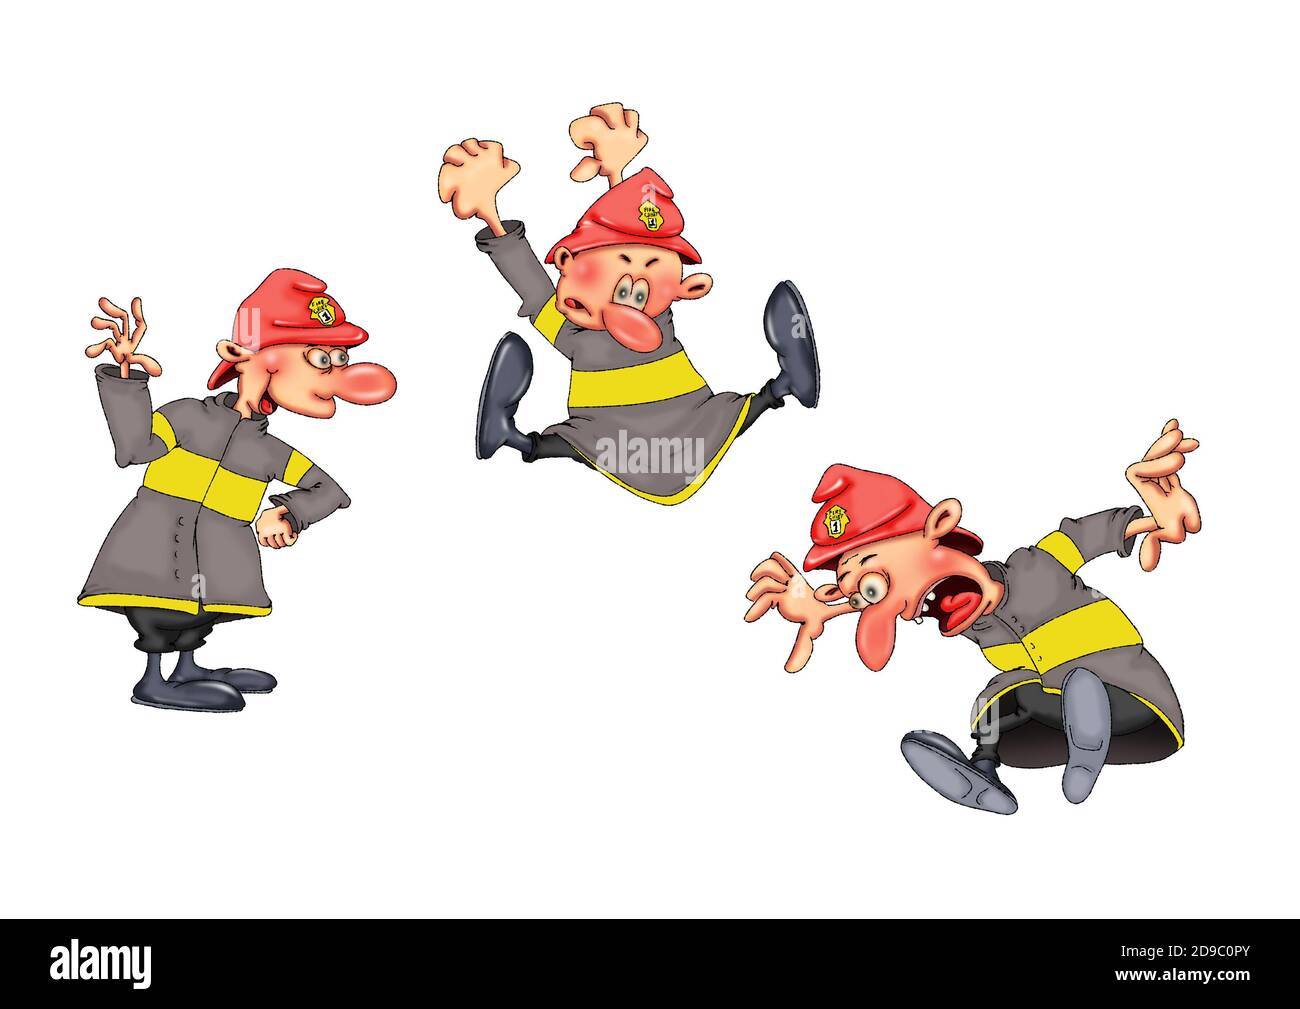 Les pompiers dans diverses poses amusantes. Illustration sur fond blanc. Banque D'Images